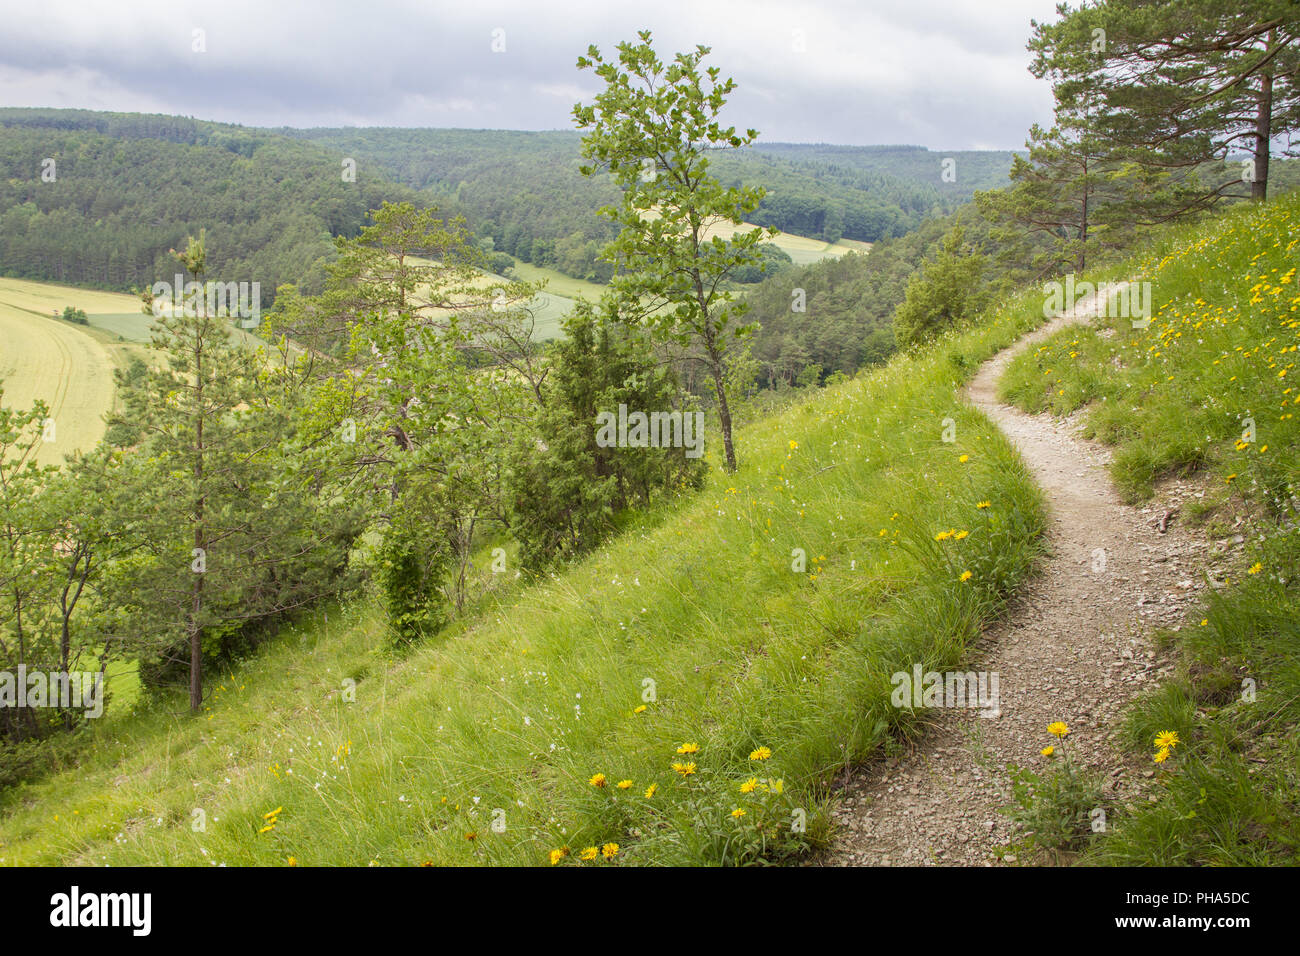 Paysage protégé de la vallée de la Tauber Koenigheim à proximité, Allemagne Banque D'Images